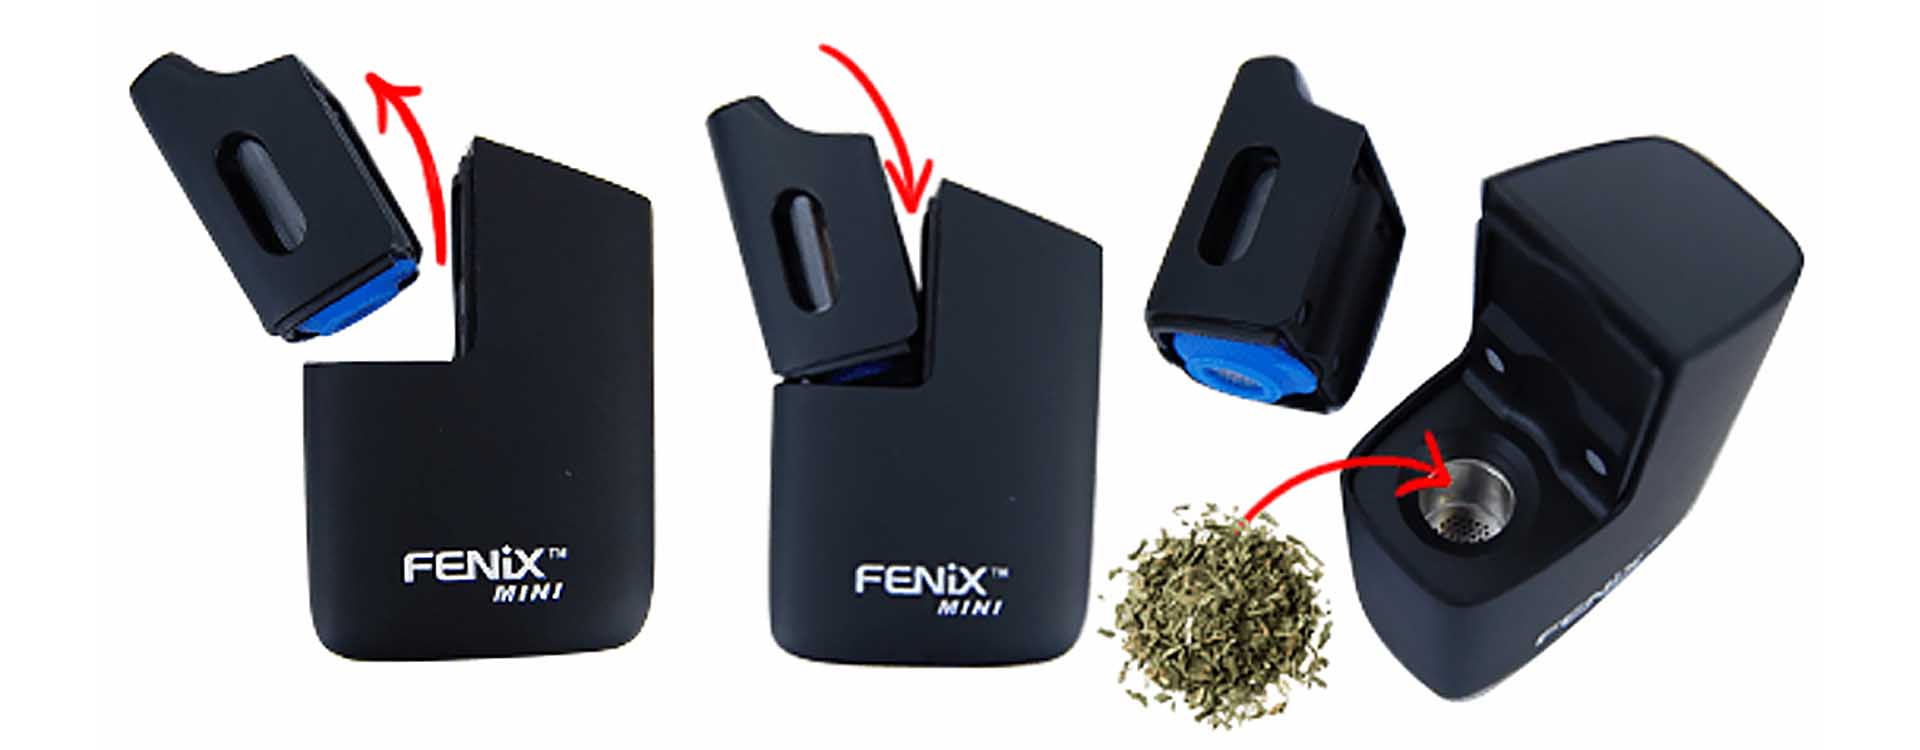 Ako používať vaporizér Fenix mini so sušenými bylinami